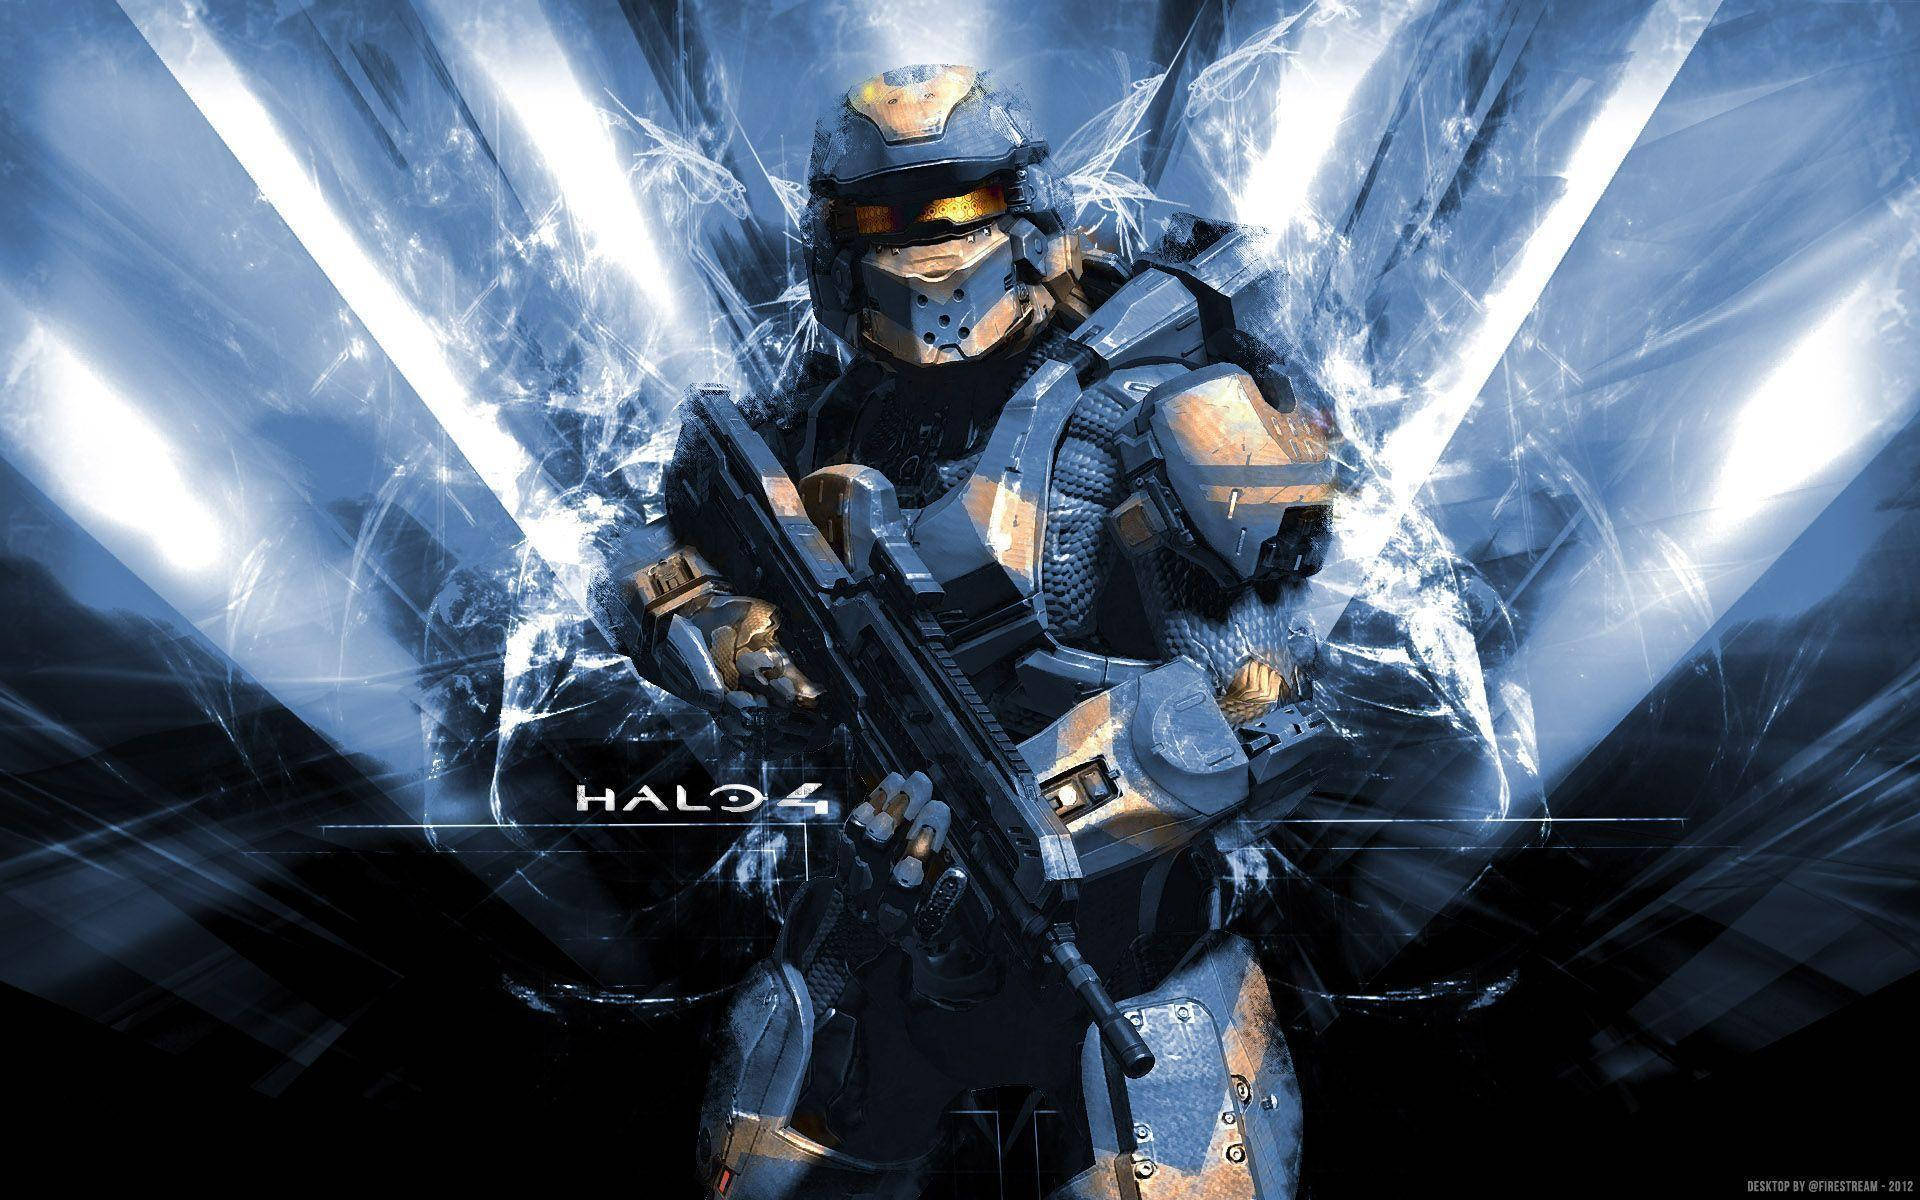 Halo 4 Spartan Warrior In Blue